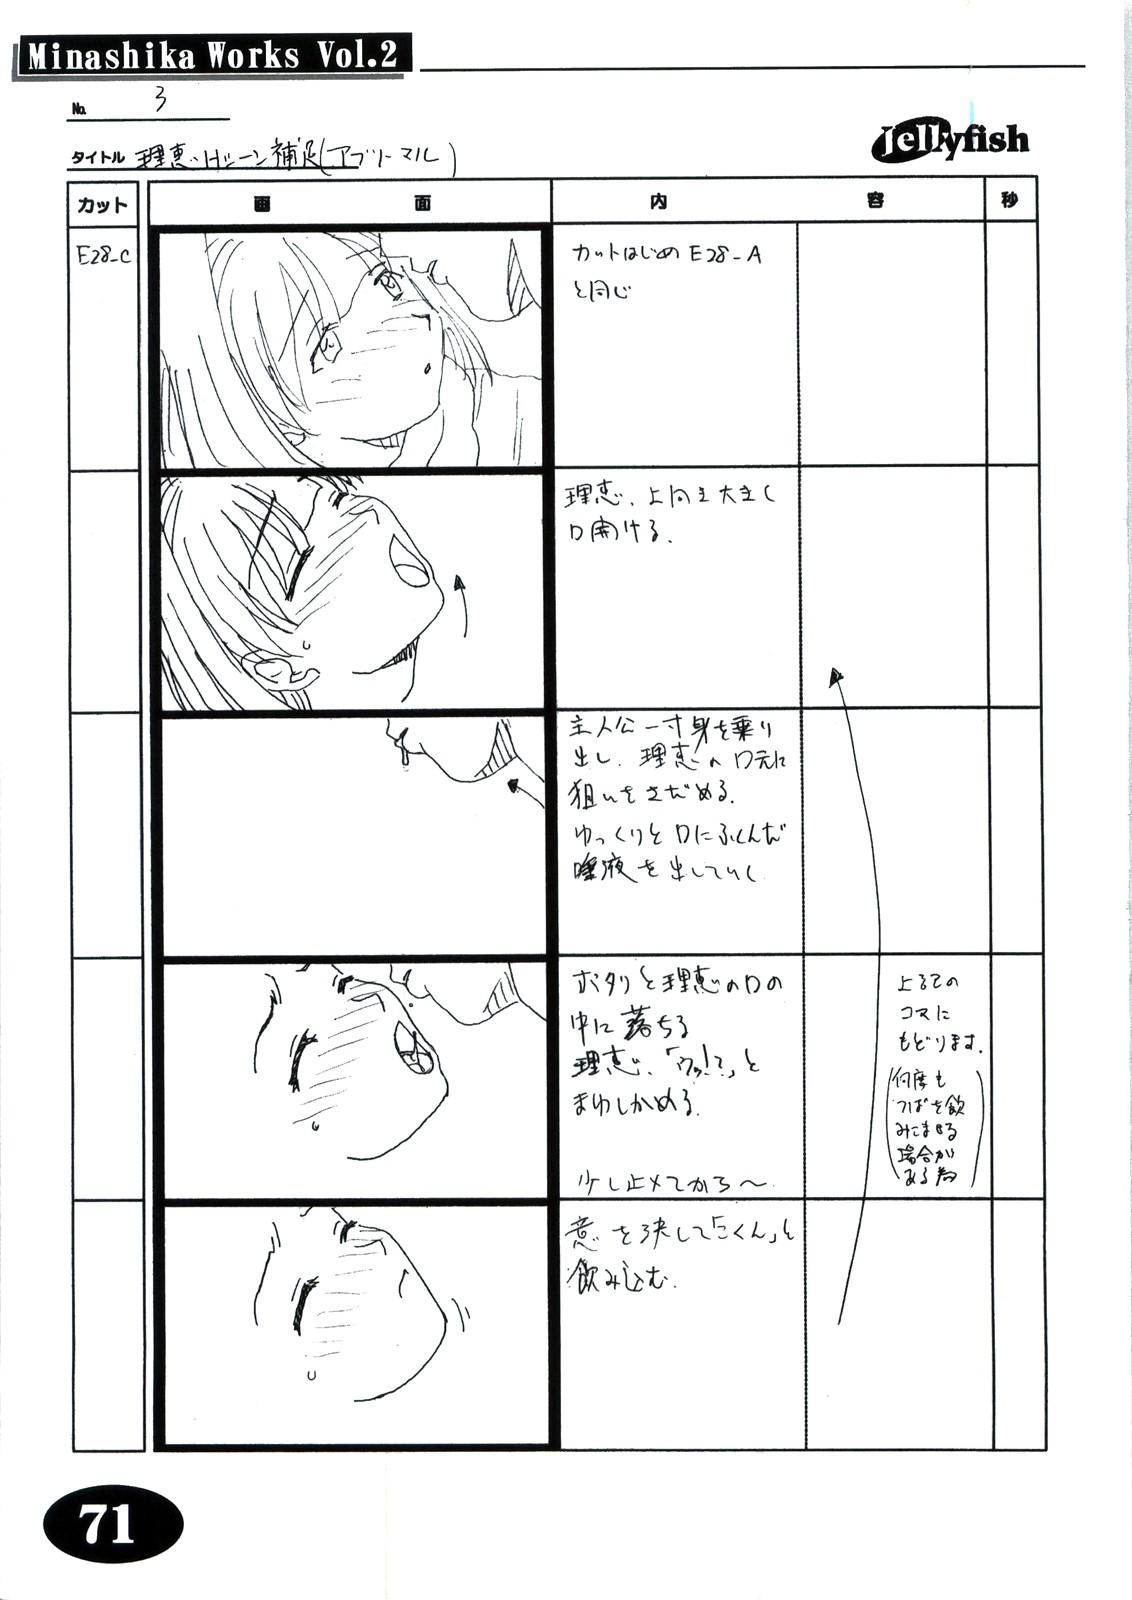 [Makino Jimusho (Taki Minashika)] Minasika Works Vol.2 "LOVERS ~Koi ni Ochitara...~" Ekonte-shuu 69